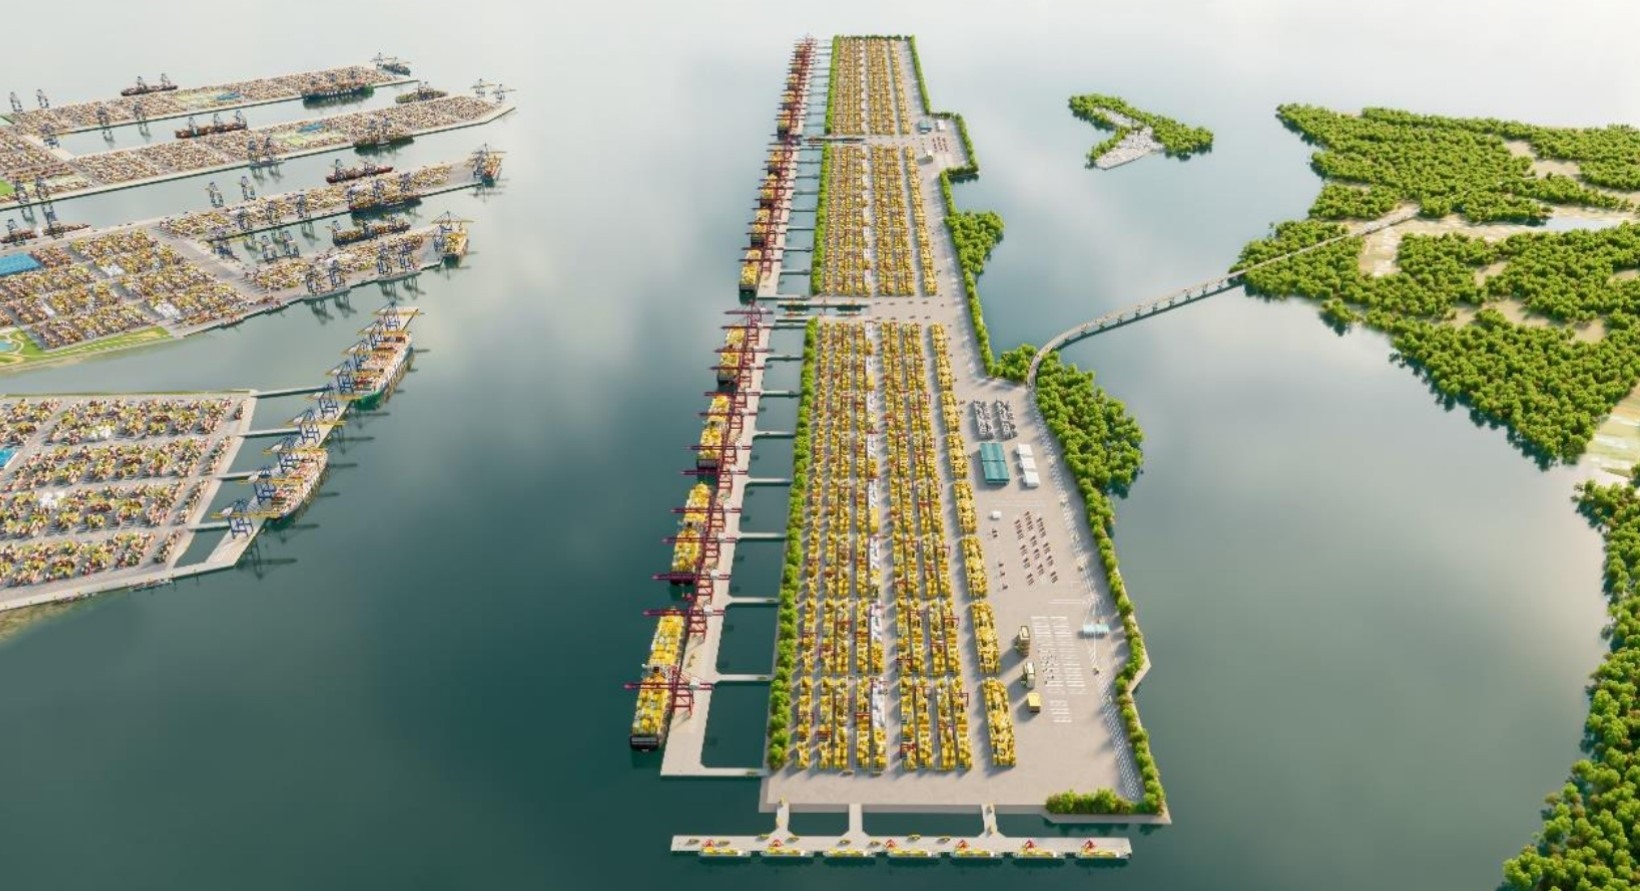 Việc kết nối giao thông đến cảng trước năm 2030 được tính toán chỉ thông qua đường thủy, sau đó mới kết nối bằng đường bộ. Tuyến đường nối đến cảng cũng tính làm trên cao để hạn chế ảnh hưởng Khu dự trữ sinh quyển Cần Giờ.